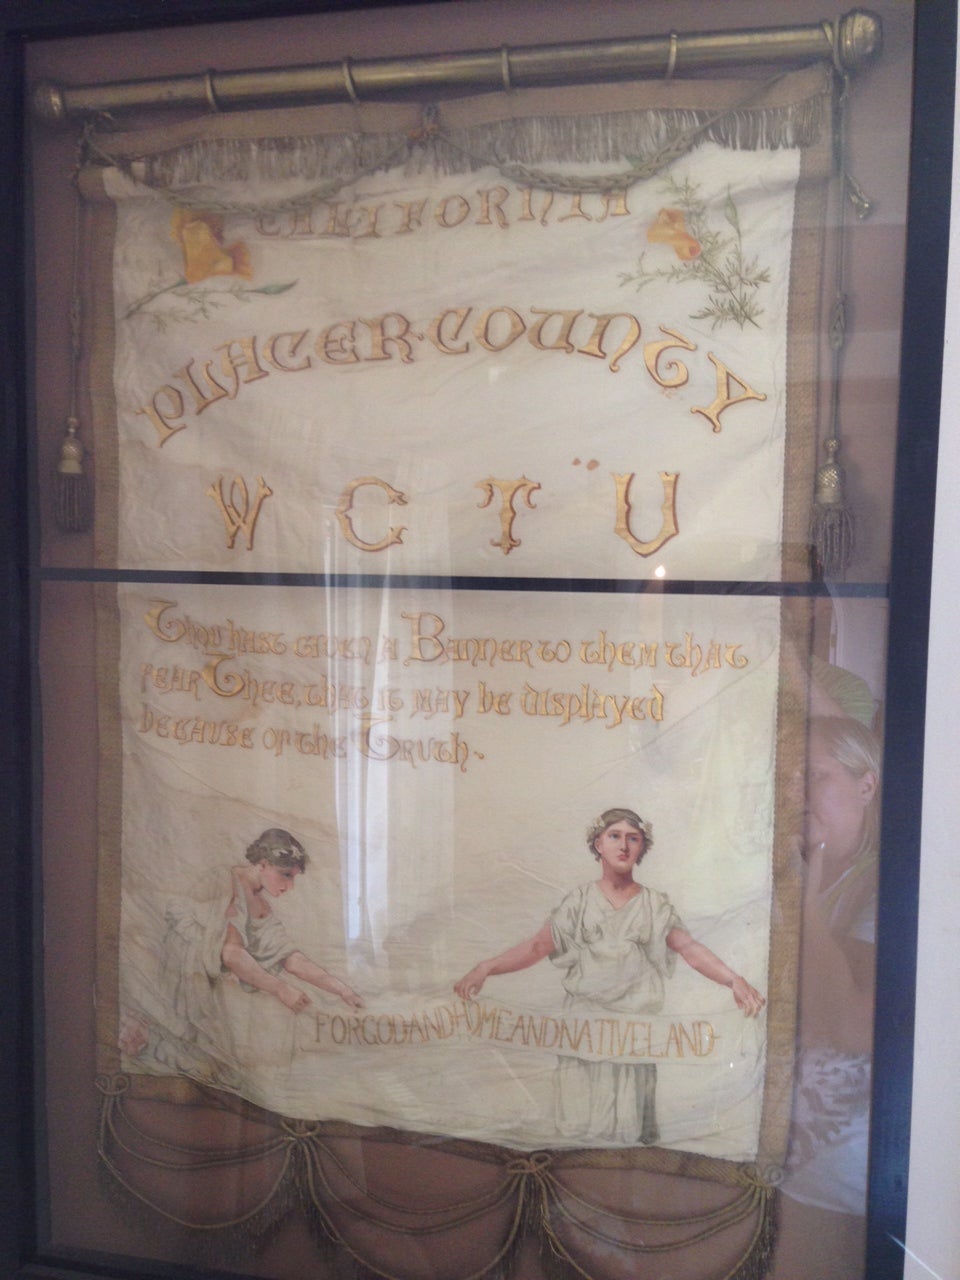 California WCTU Banner, ca 1900.